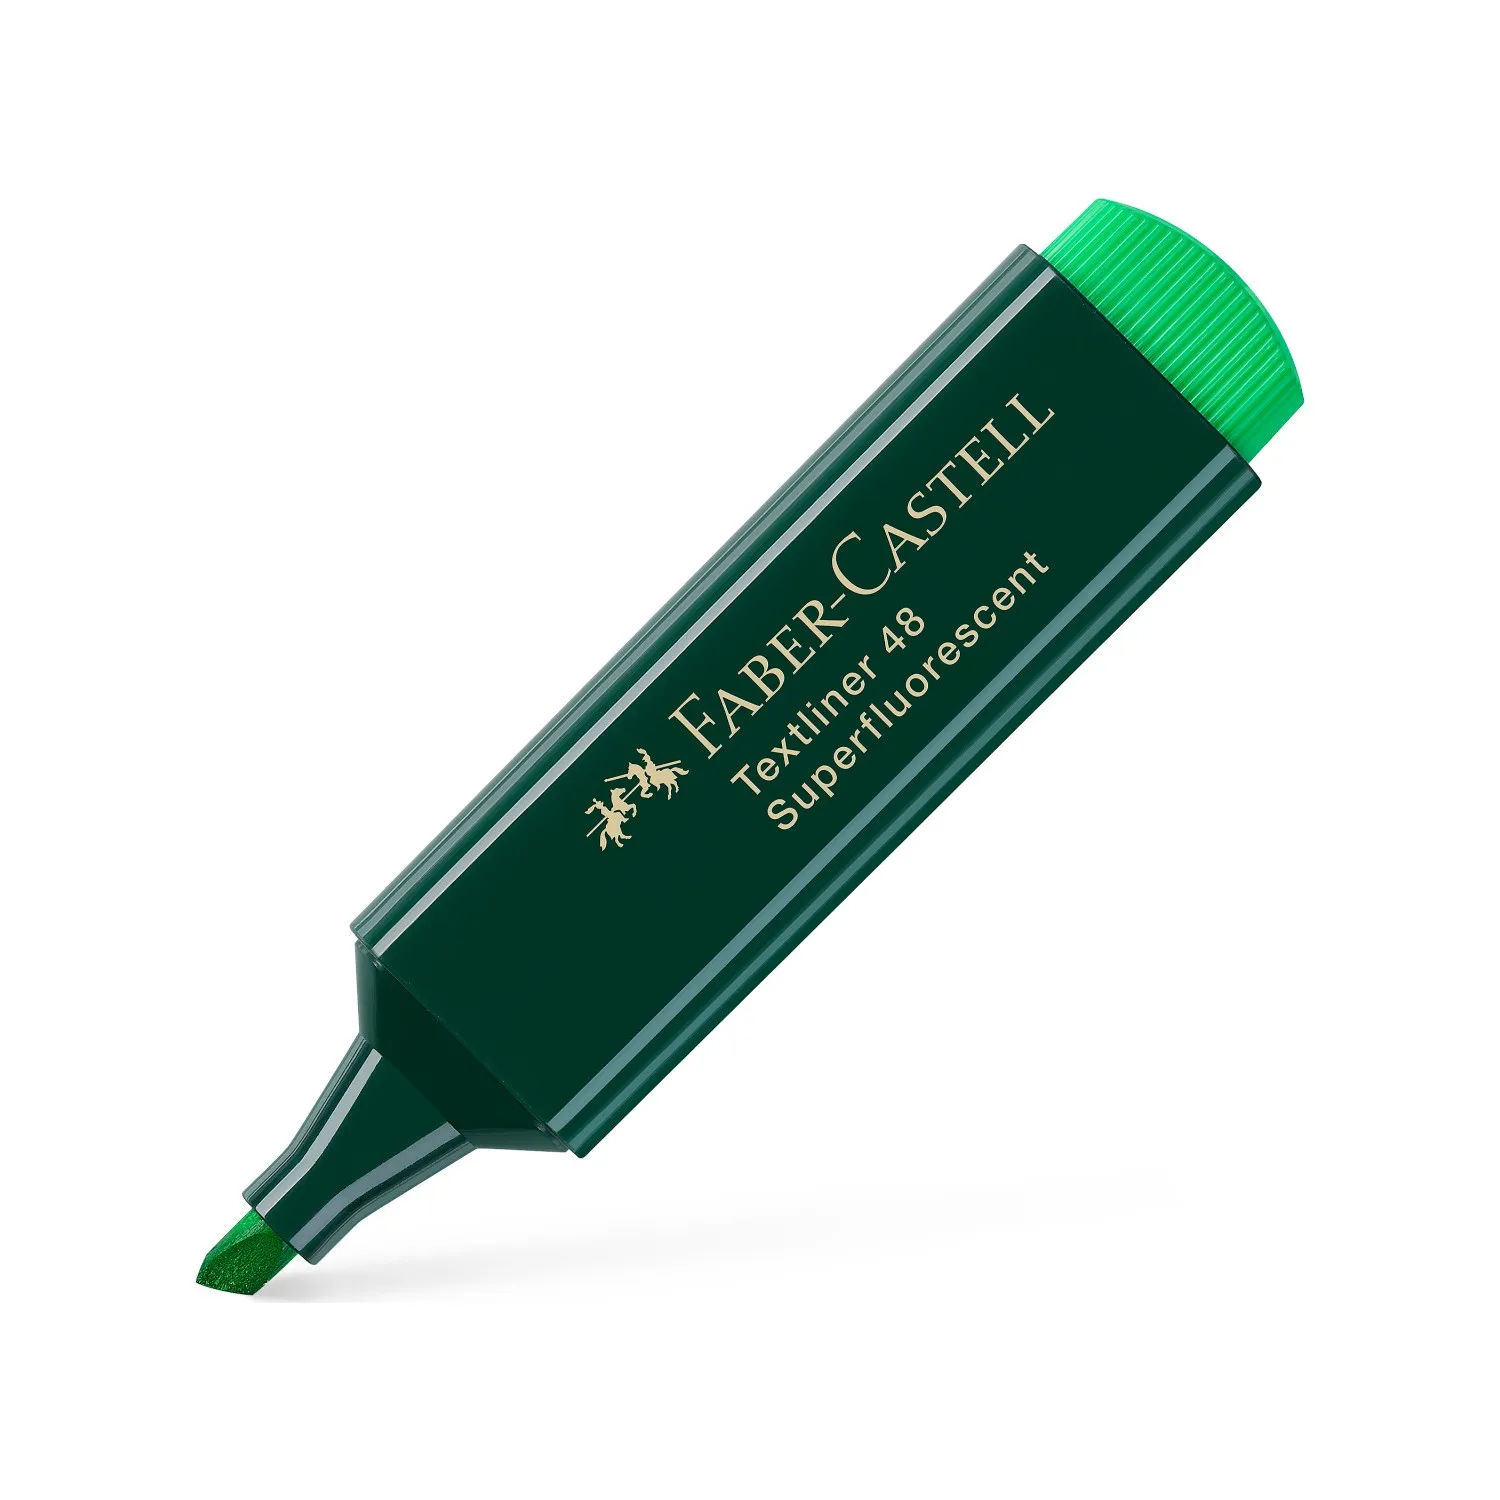 Faber-Castell Green Body хайлайтер 6 + 2-идеальный качественный продукт для многофункциональных пользователей в школе, на экзамен, в офисе, до